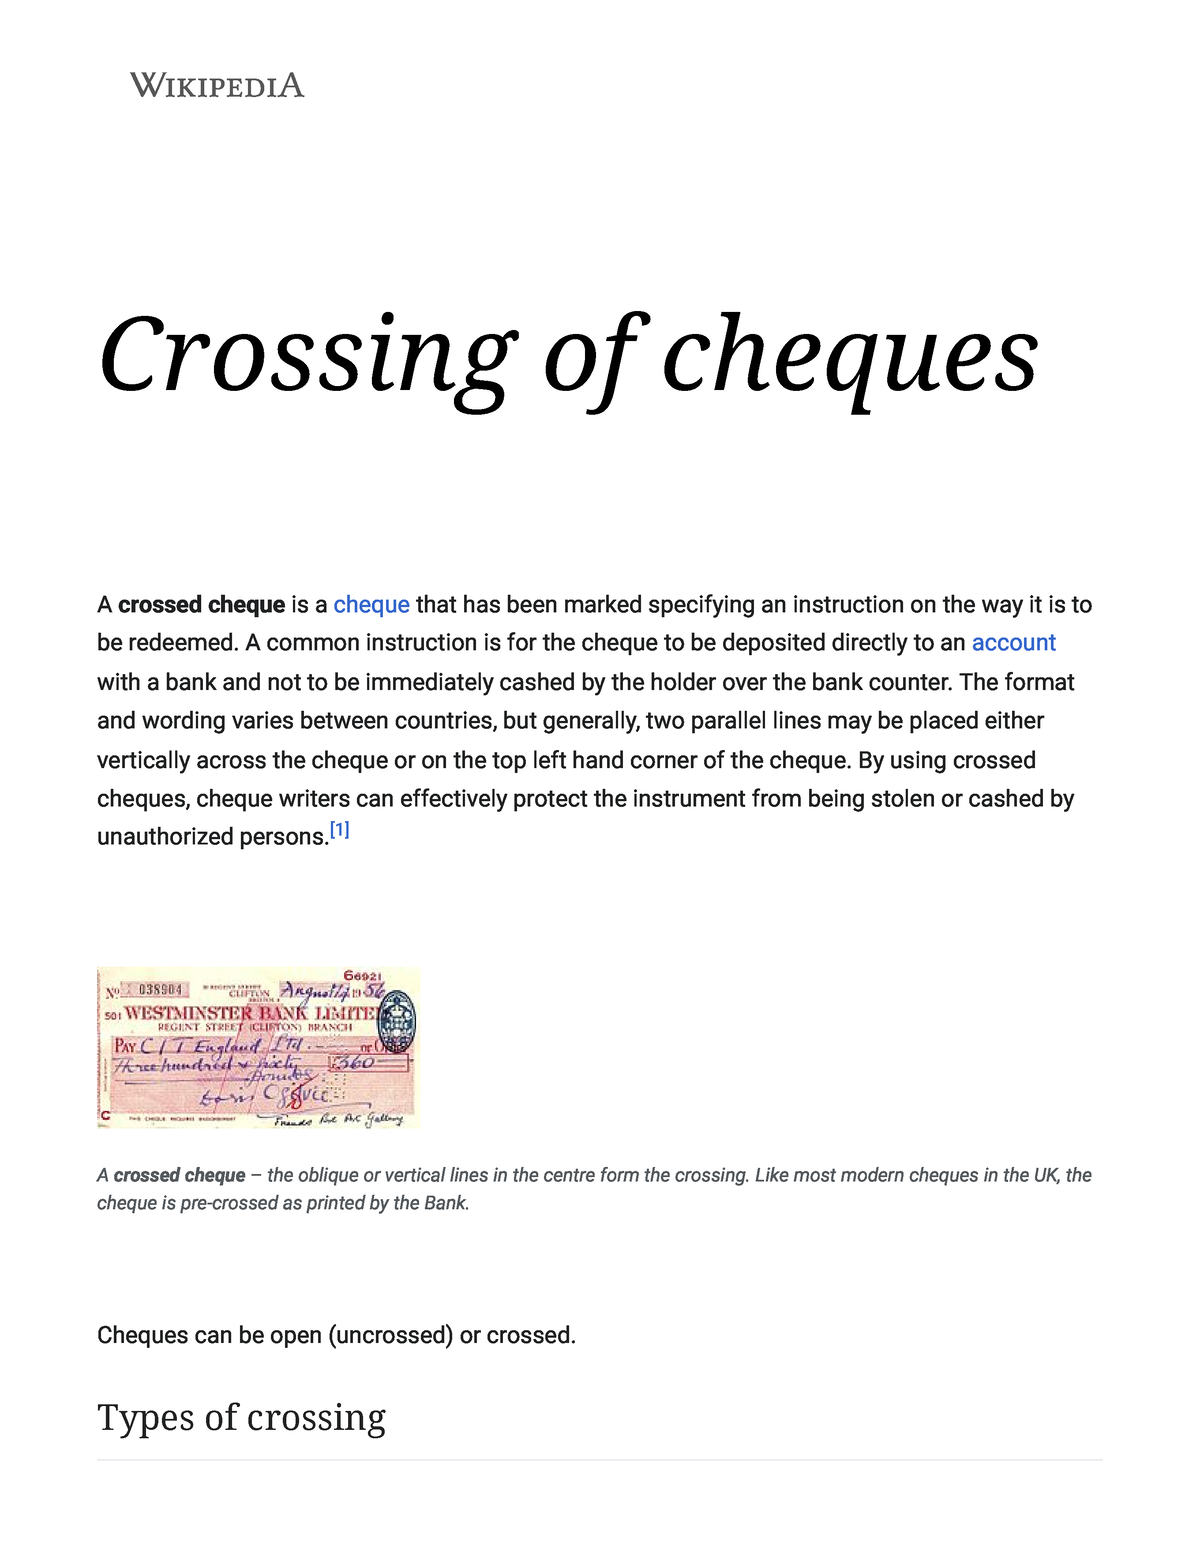 Cheque - Wikipedia